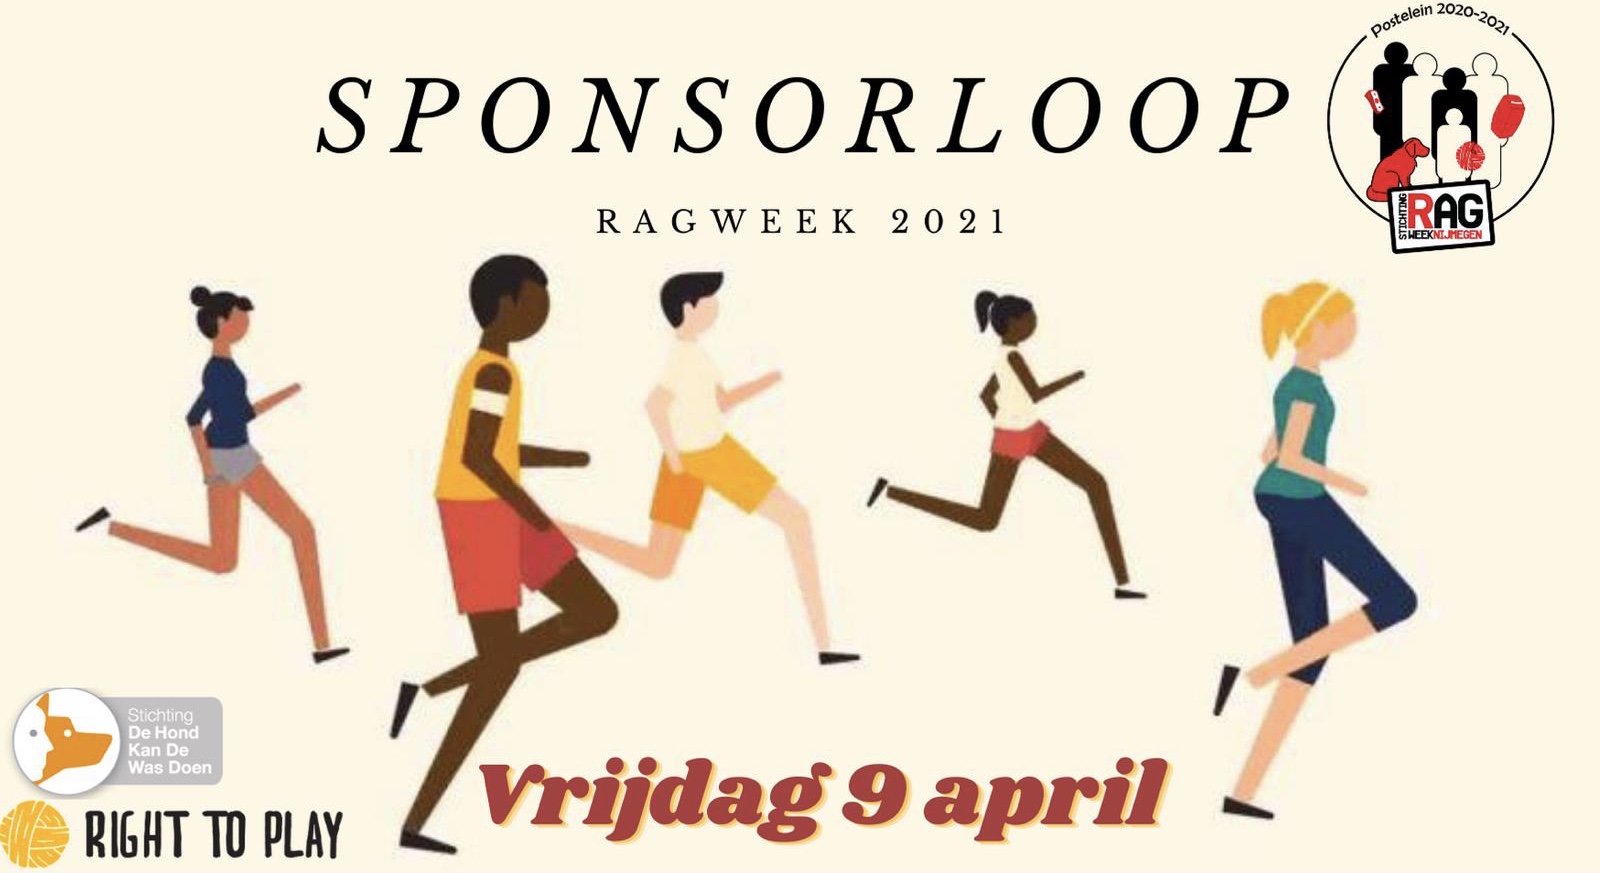 RAGweek: Sponsorloop